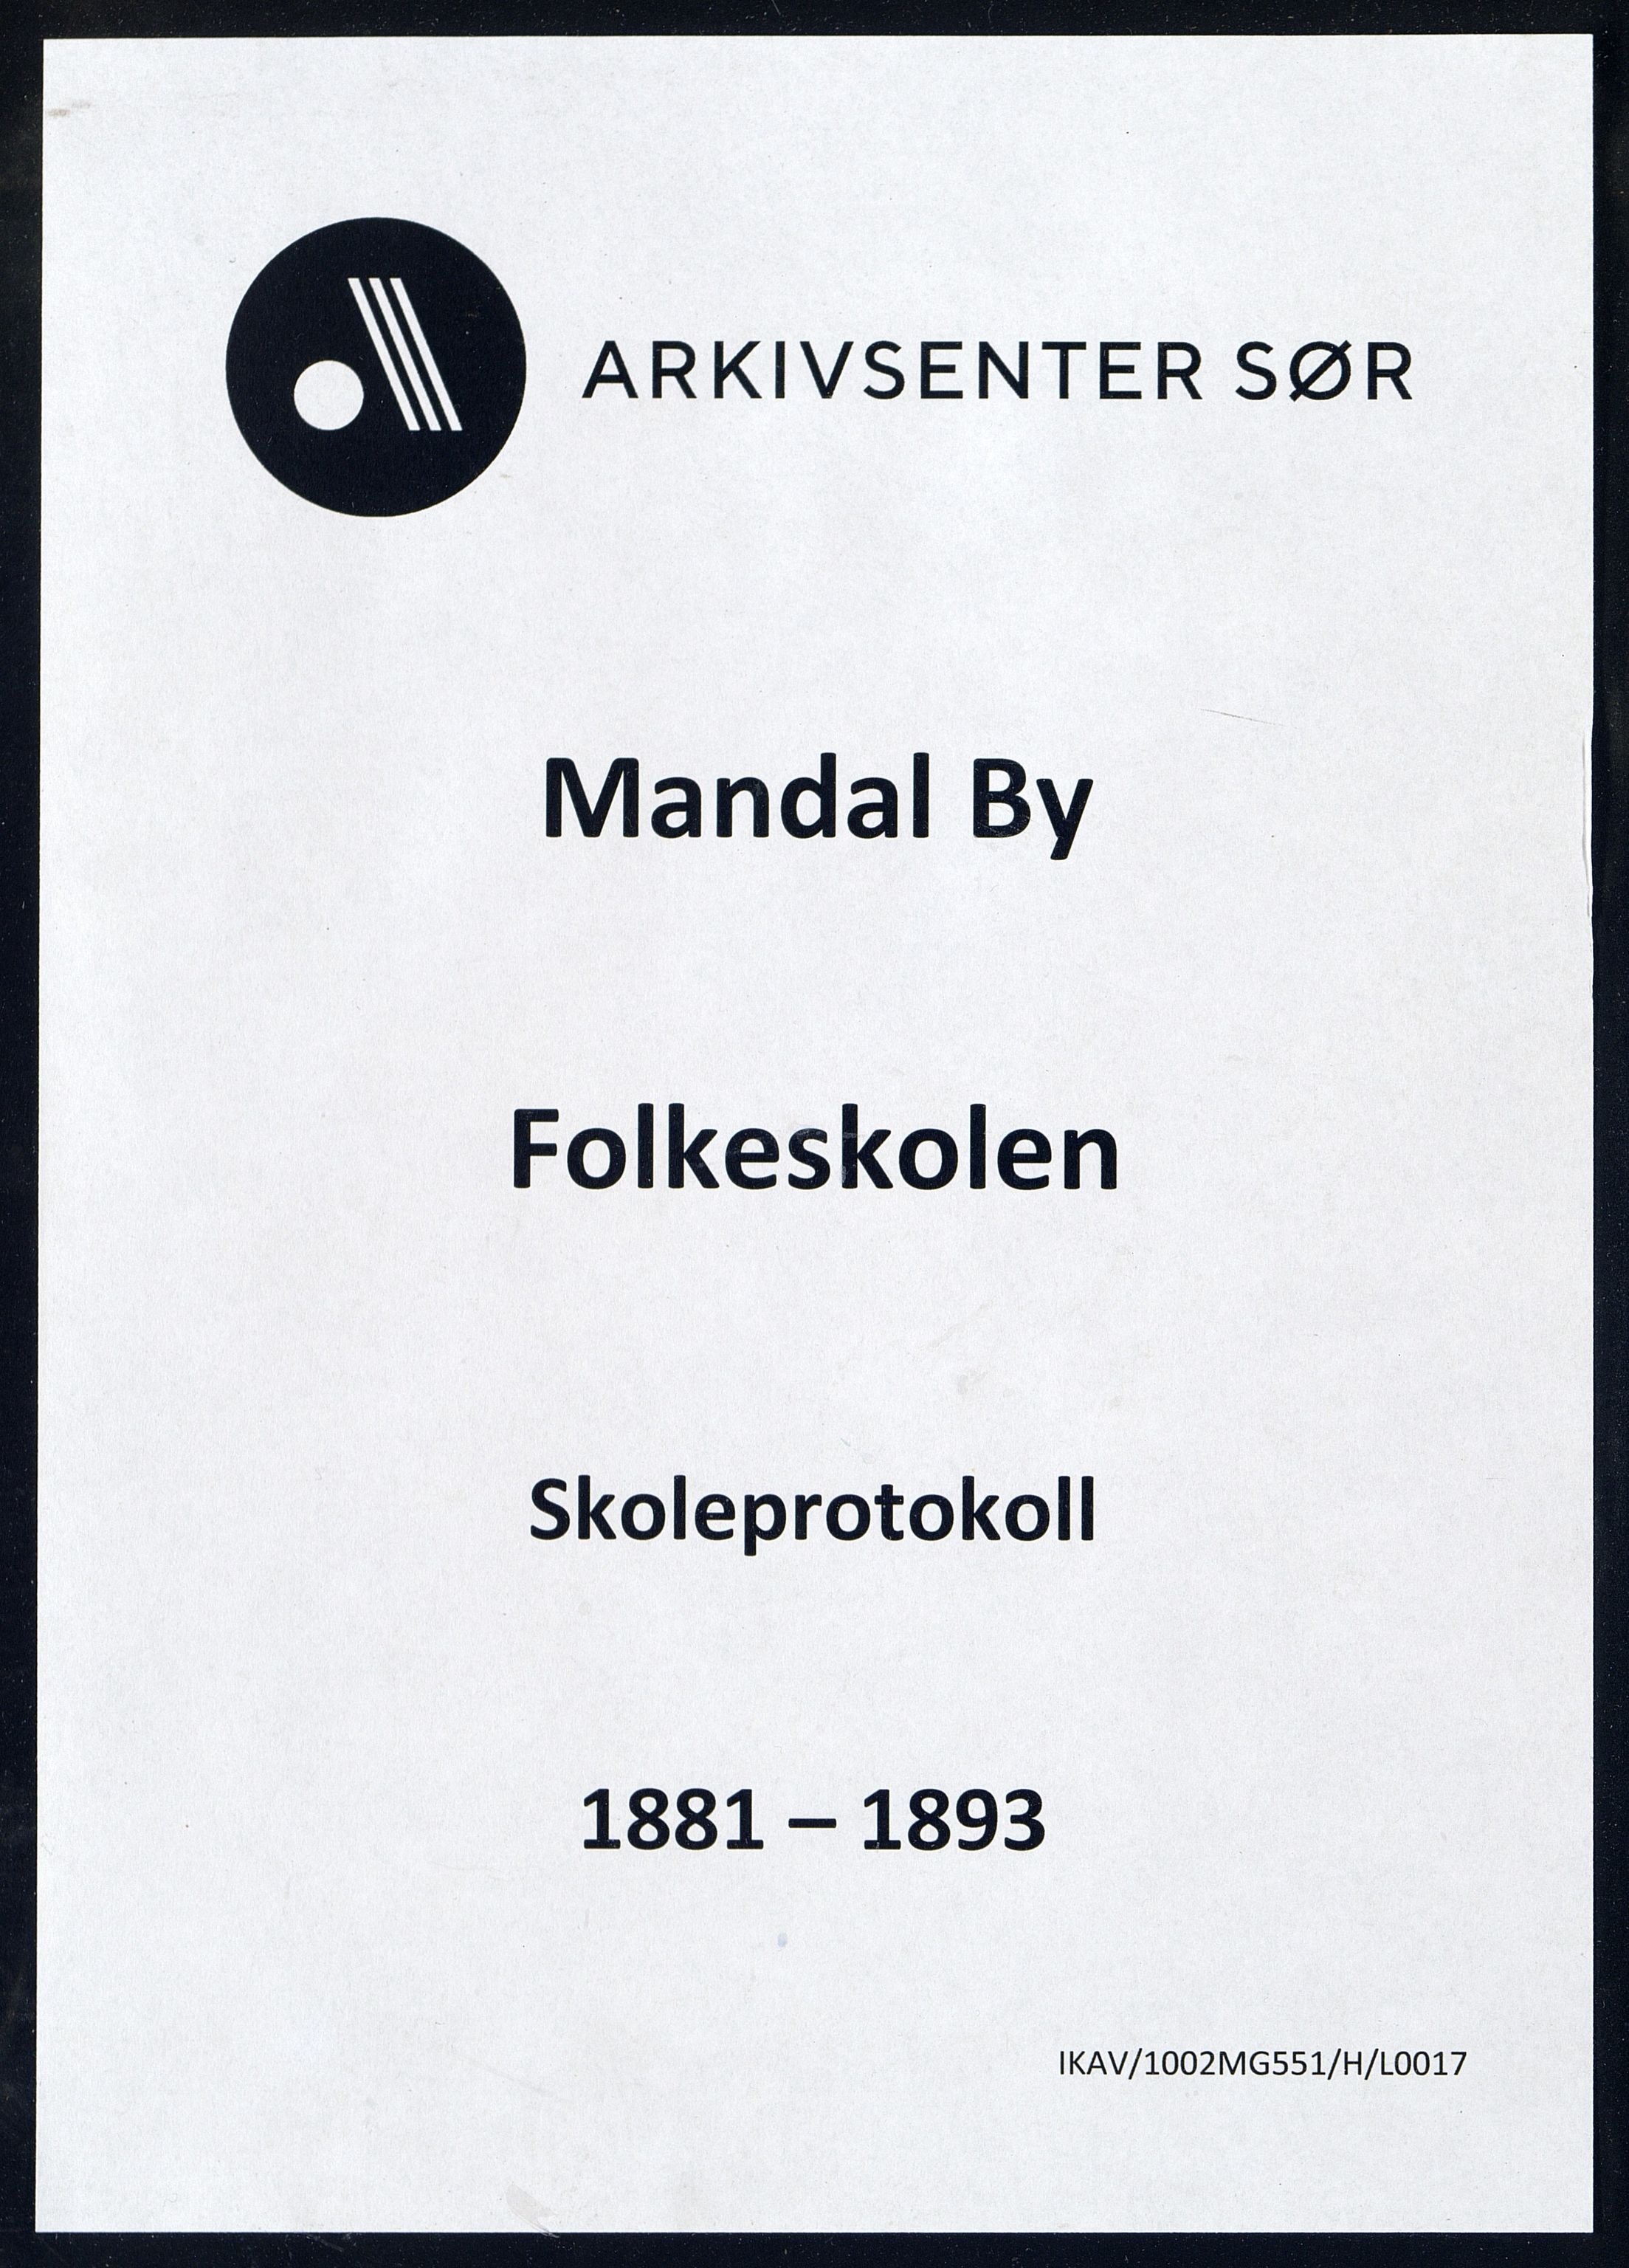 Mandal By - Mandal Allmueskole/Folkeskole/Skole, IKAV/1002MG551/H/L0017: Skoleprotokoll, 1881-1892